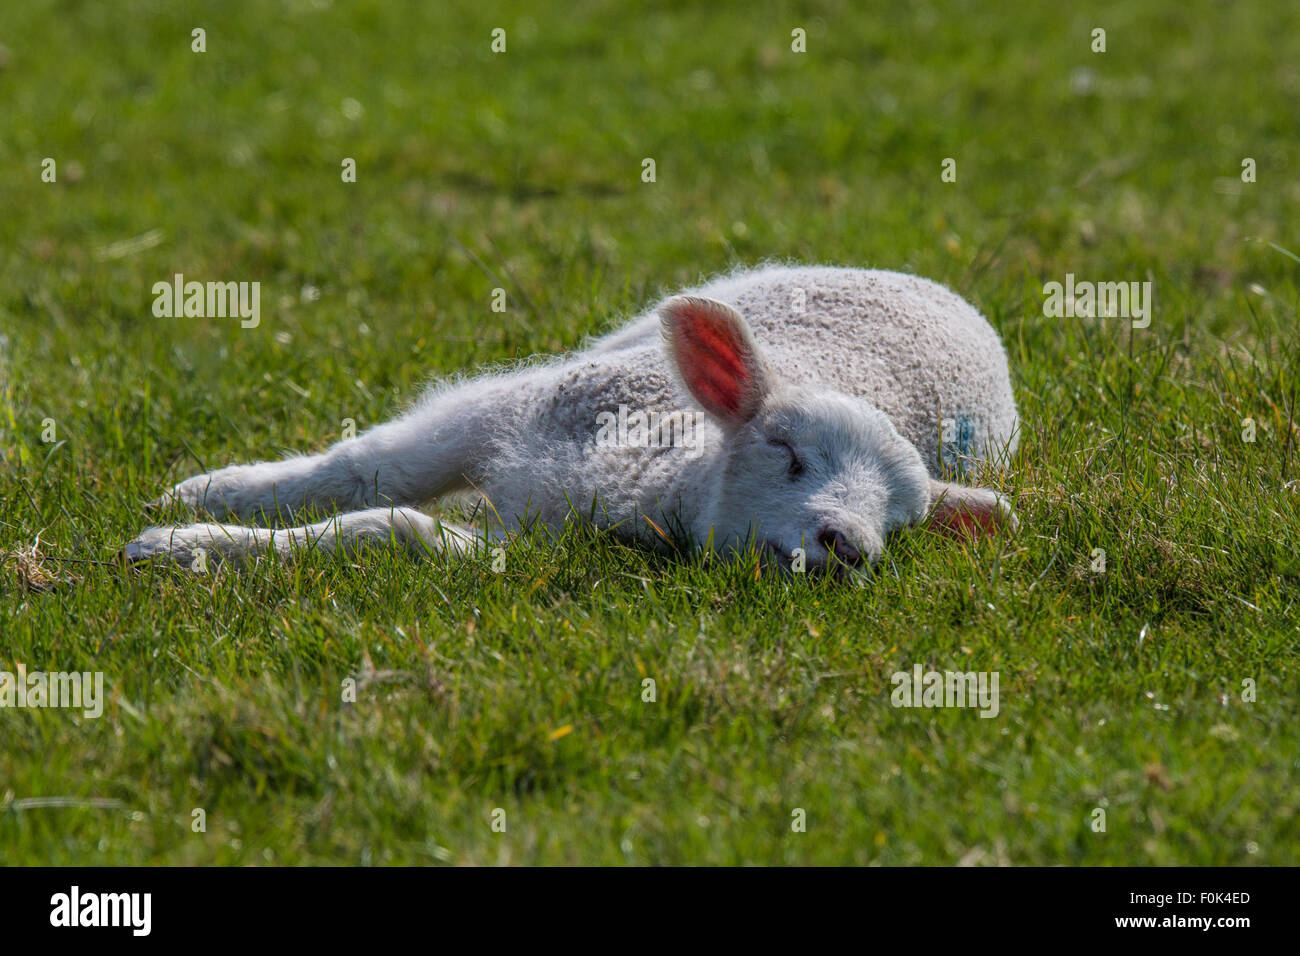 Les jeunes Romney Marsh Lamb endormi dans un champ. Banque D'Images